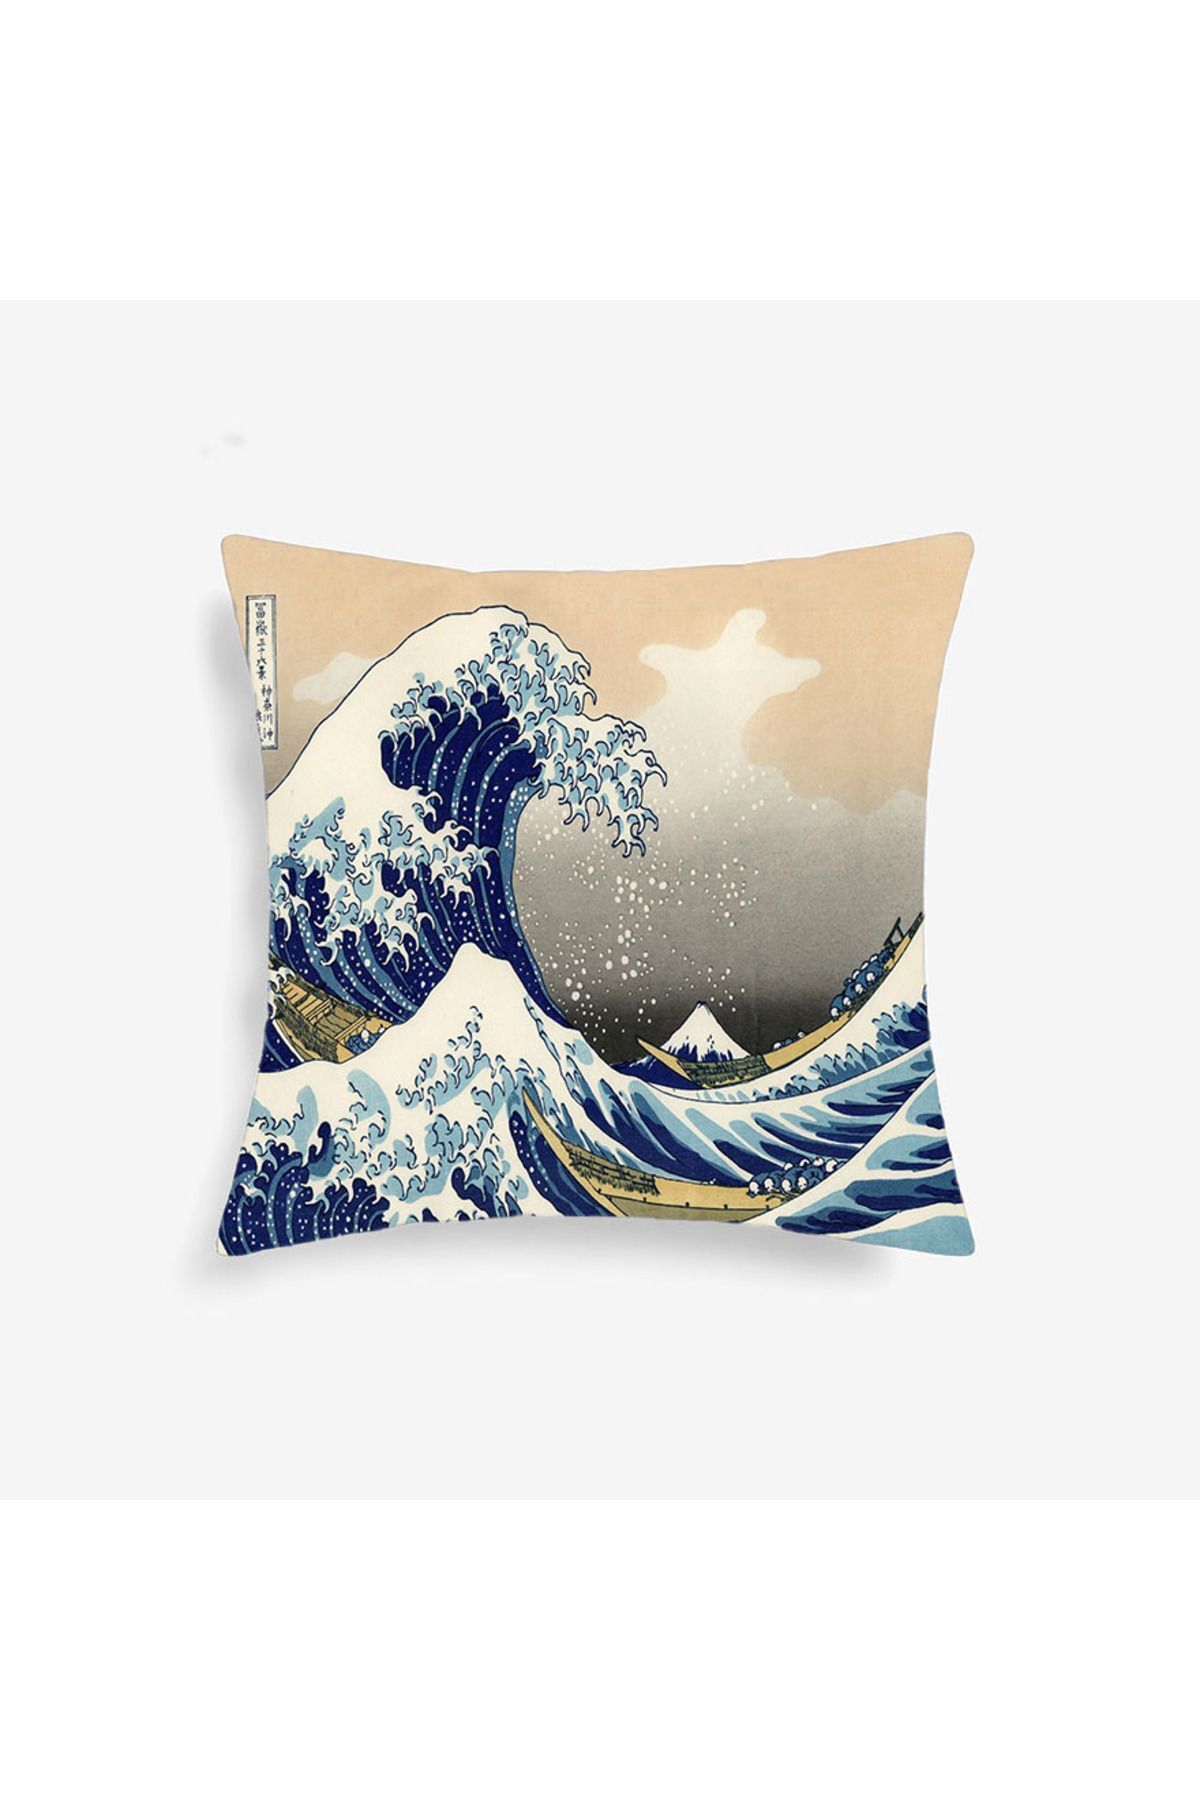 ALAMODECOR Katsushika Hokusai Büyük Dalga Kırlent Süs Yastık Dekorasyon Hediyelik Kırlent Dekoratif Yastık